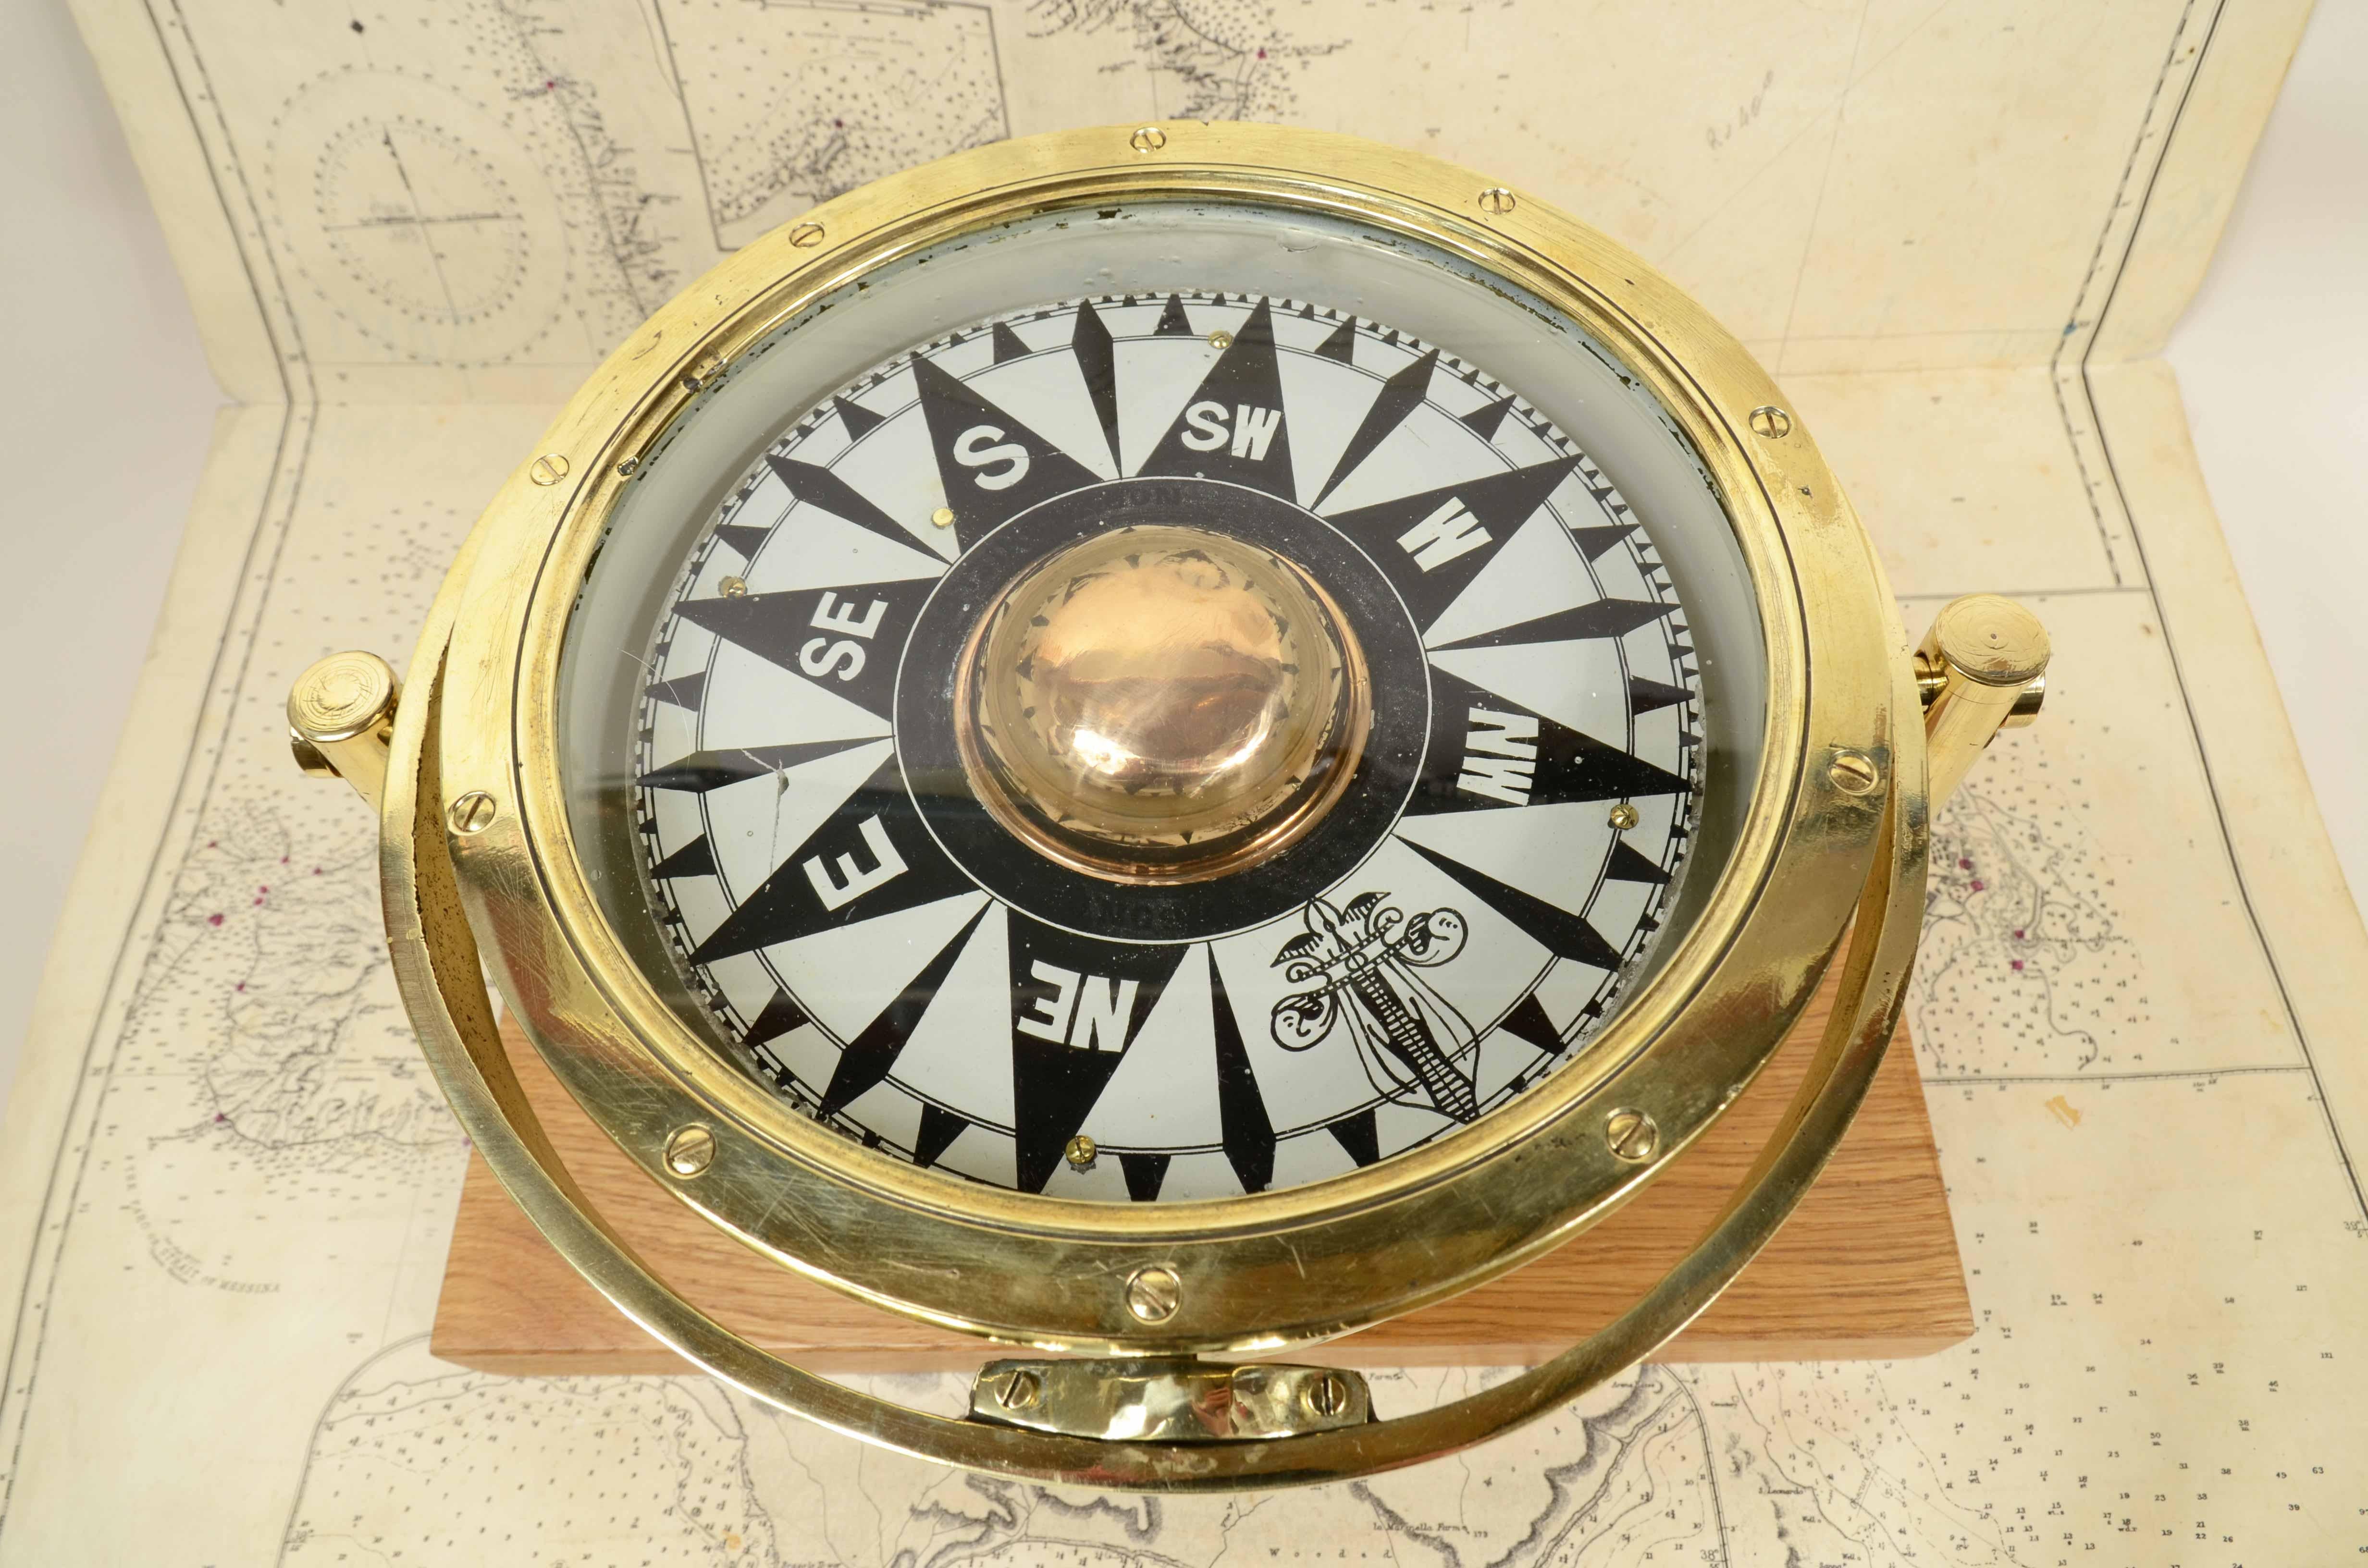 Großer nautischer Magnetkompass aus Messing und Glas, Anfang des 20. Jahrhunderts, montiert auf einem maßgefertigten Brett aus Eiche und Messing. Kompassdurchmesser cm 24,5 - Zoll 9,4, Höhe mit Sockel cm 21 - Zoll 8,3, Tischbreite cm 36 - Zoll 14,2.